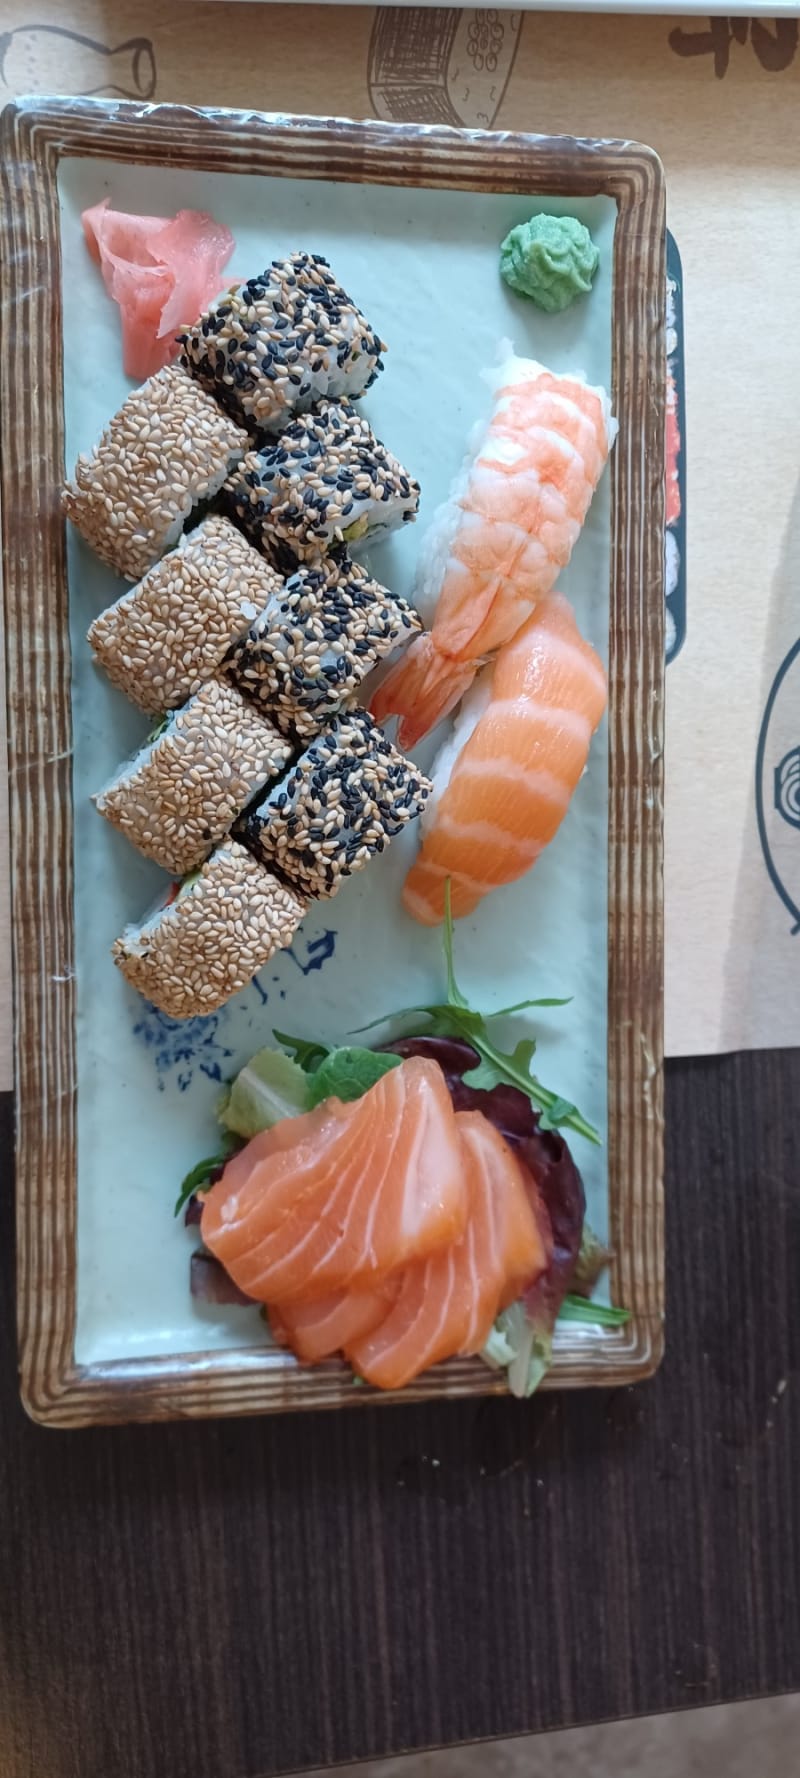 Nuo Sushi & Ramen, Madrid